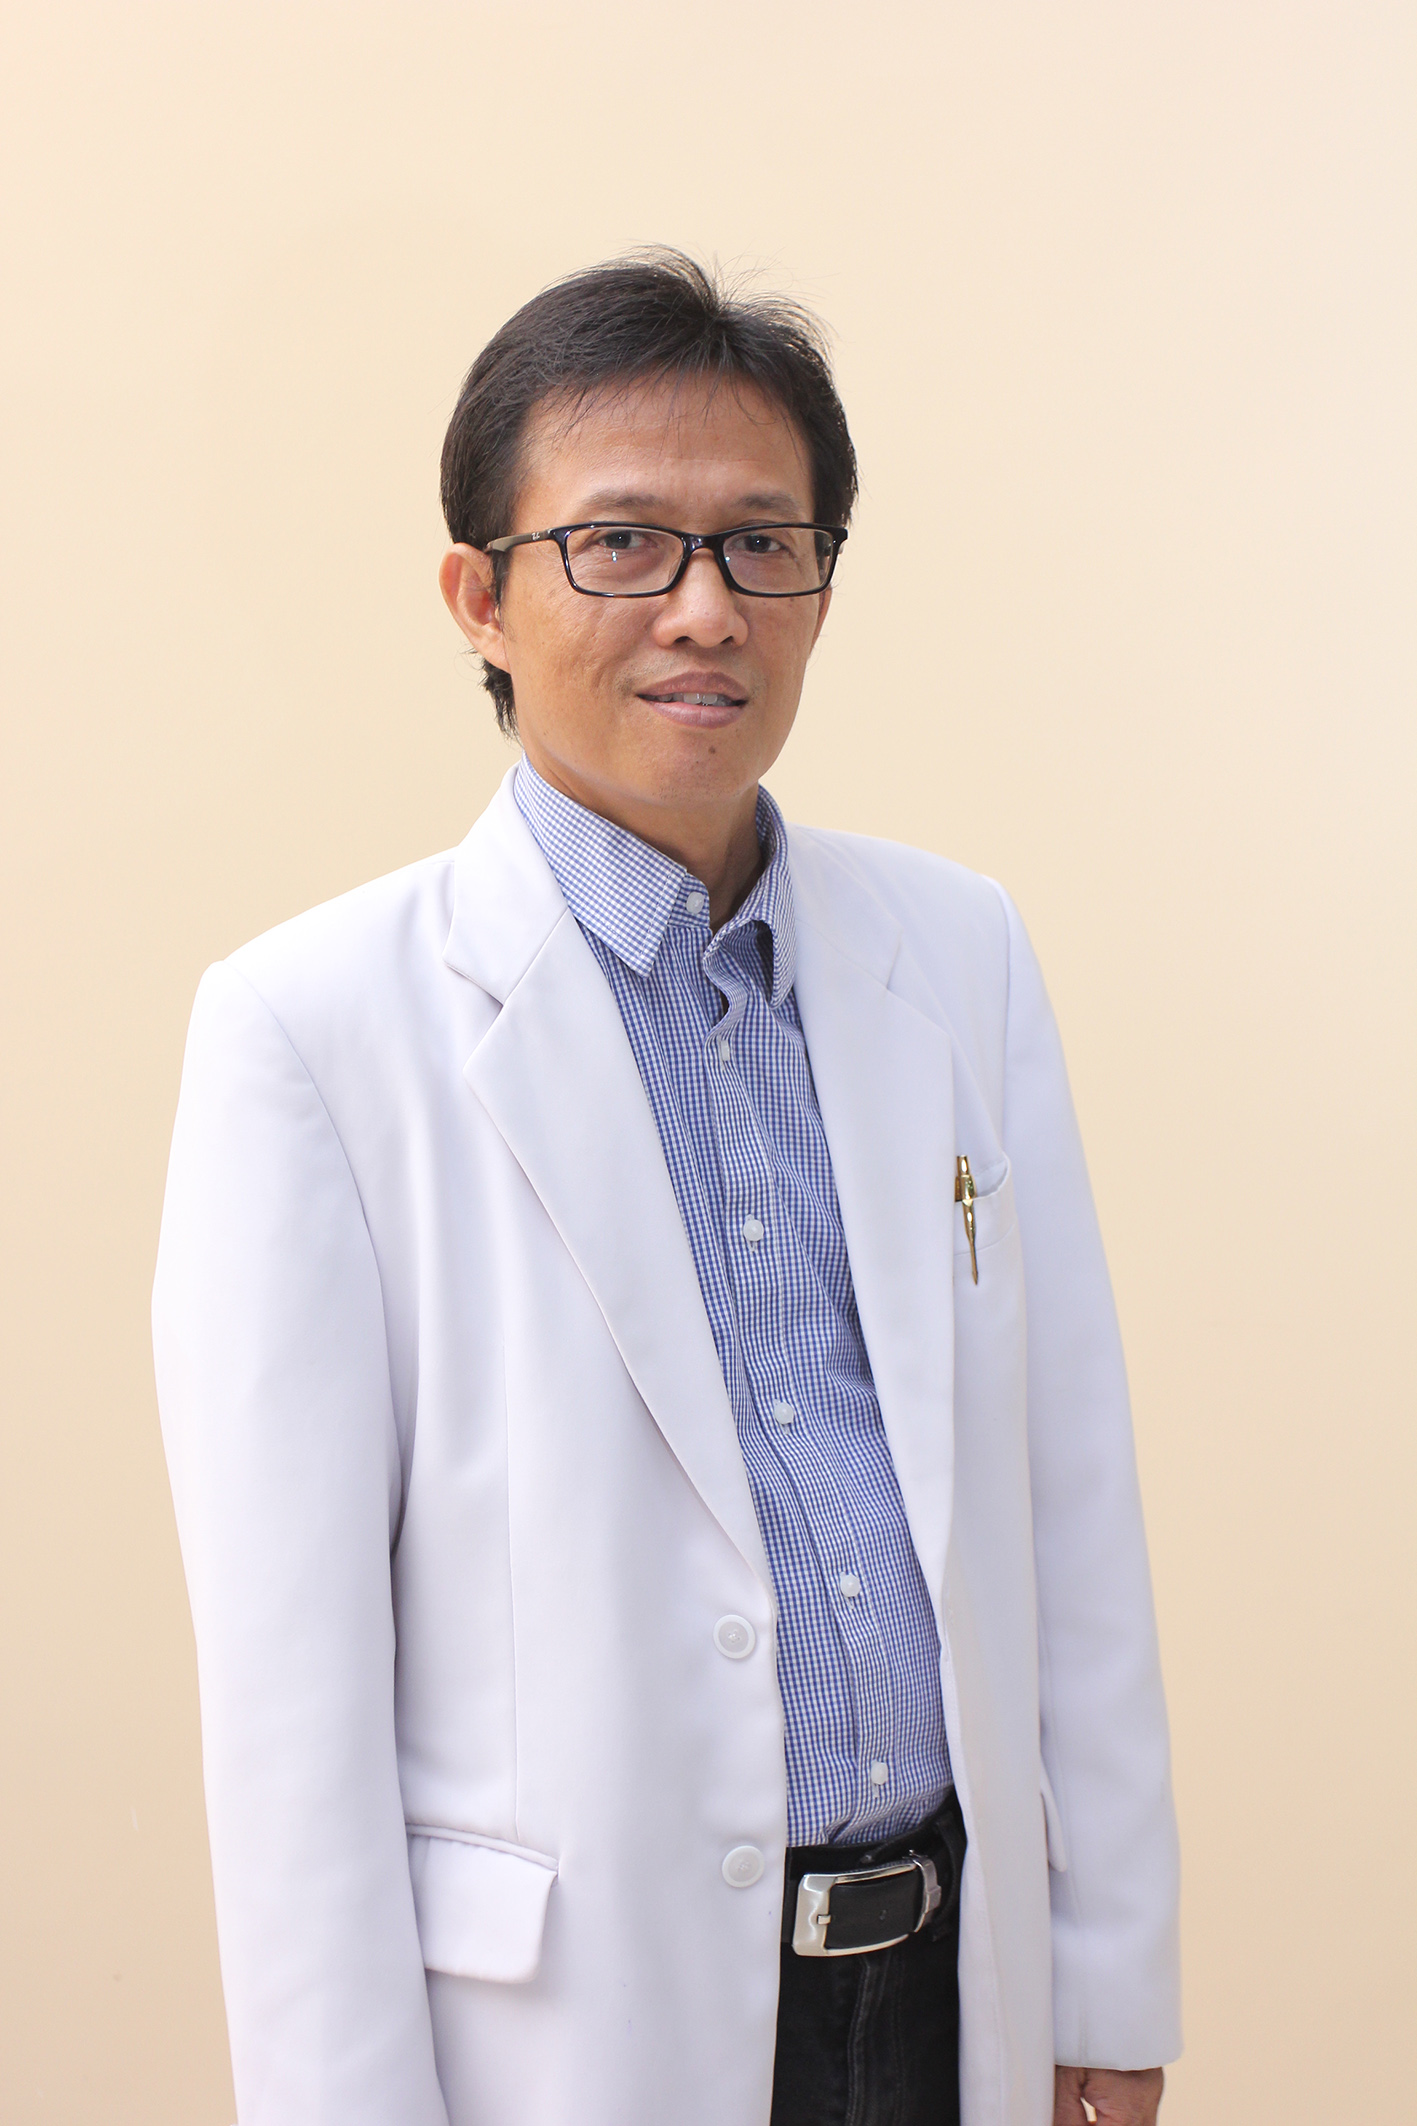 dr. BAMBANG ADI SETYOKO, Sp. PD (Klinik Geriatri)